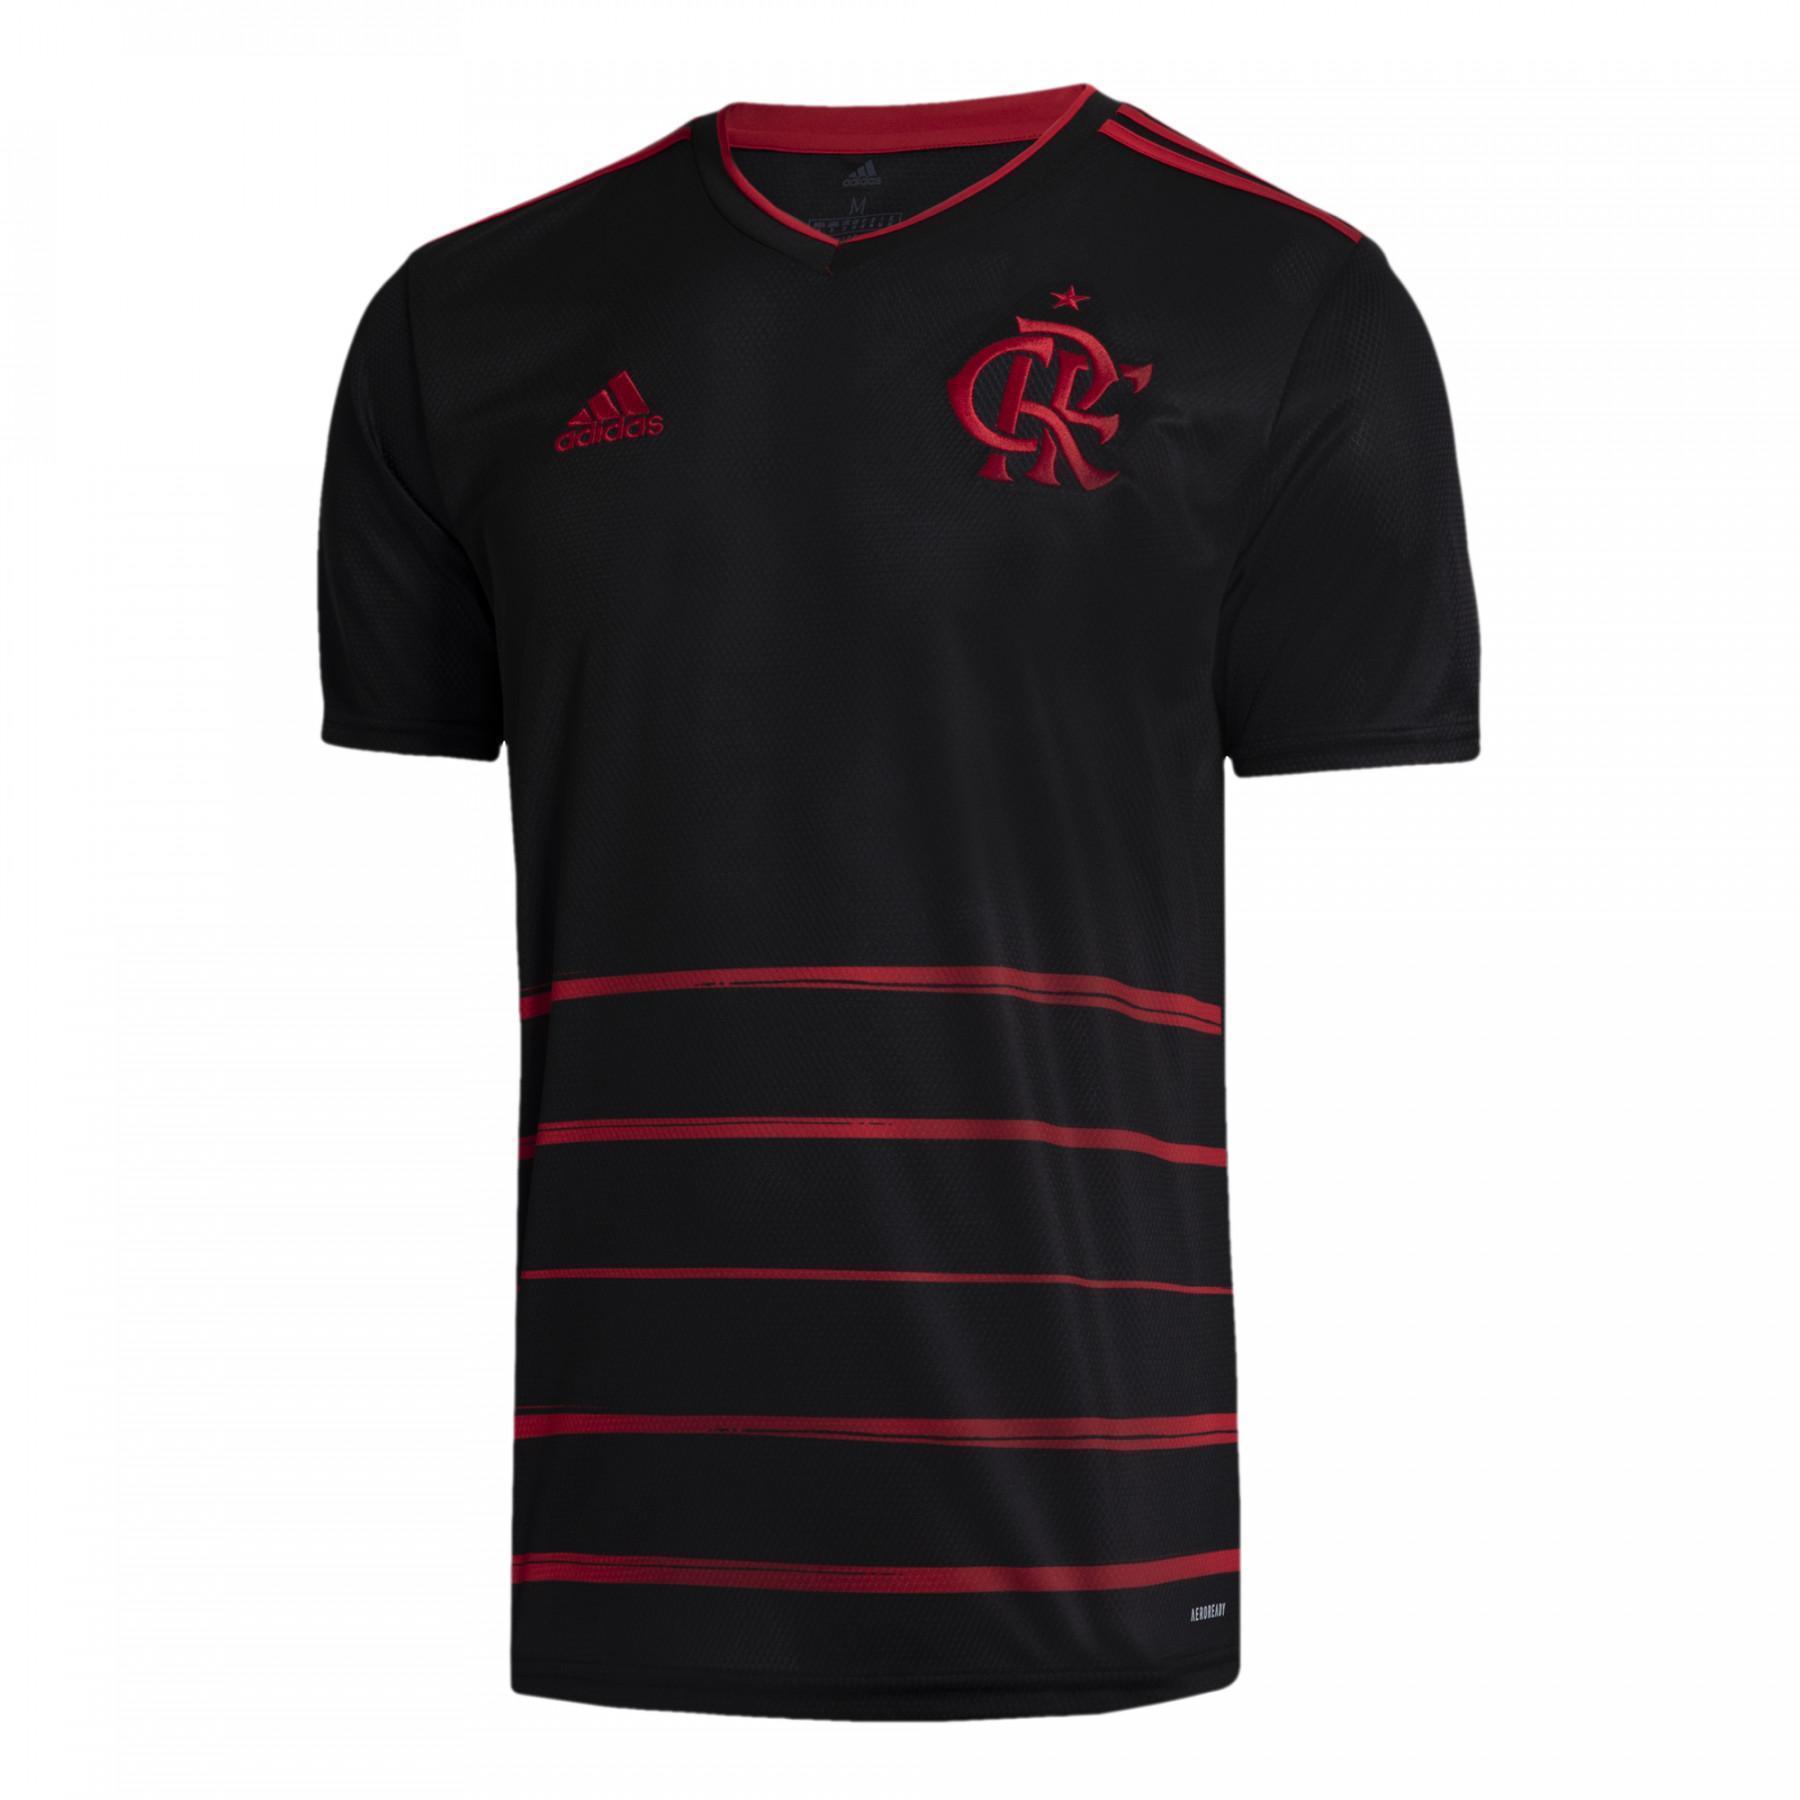 Terceira camisola do cr Flamengo 2020/21